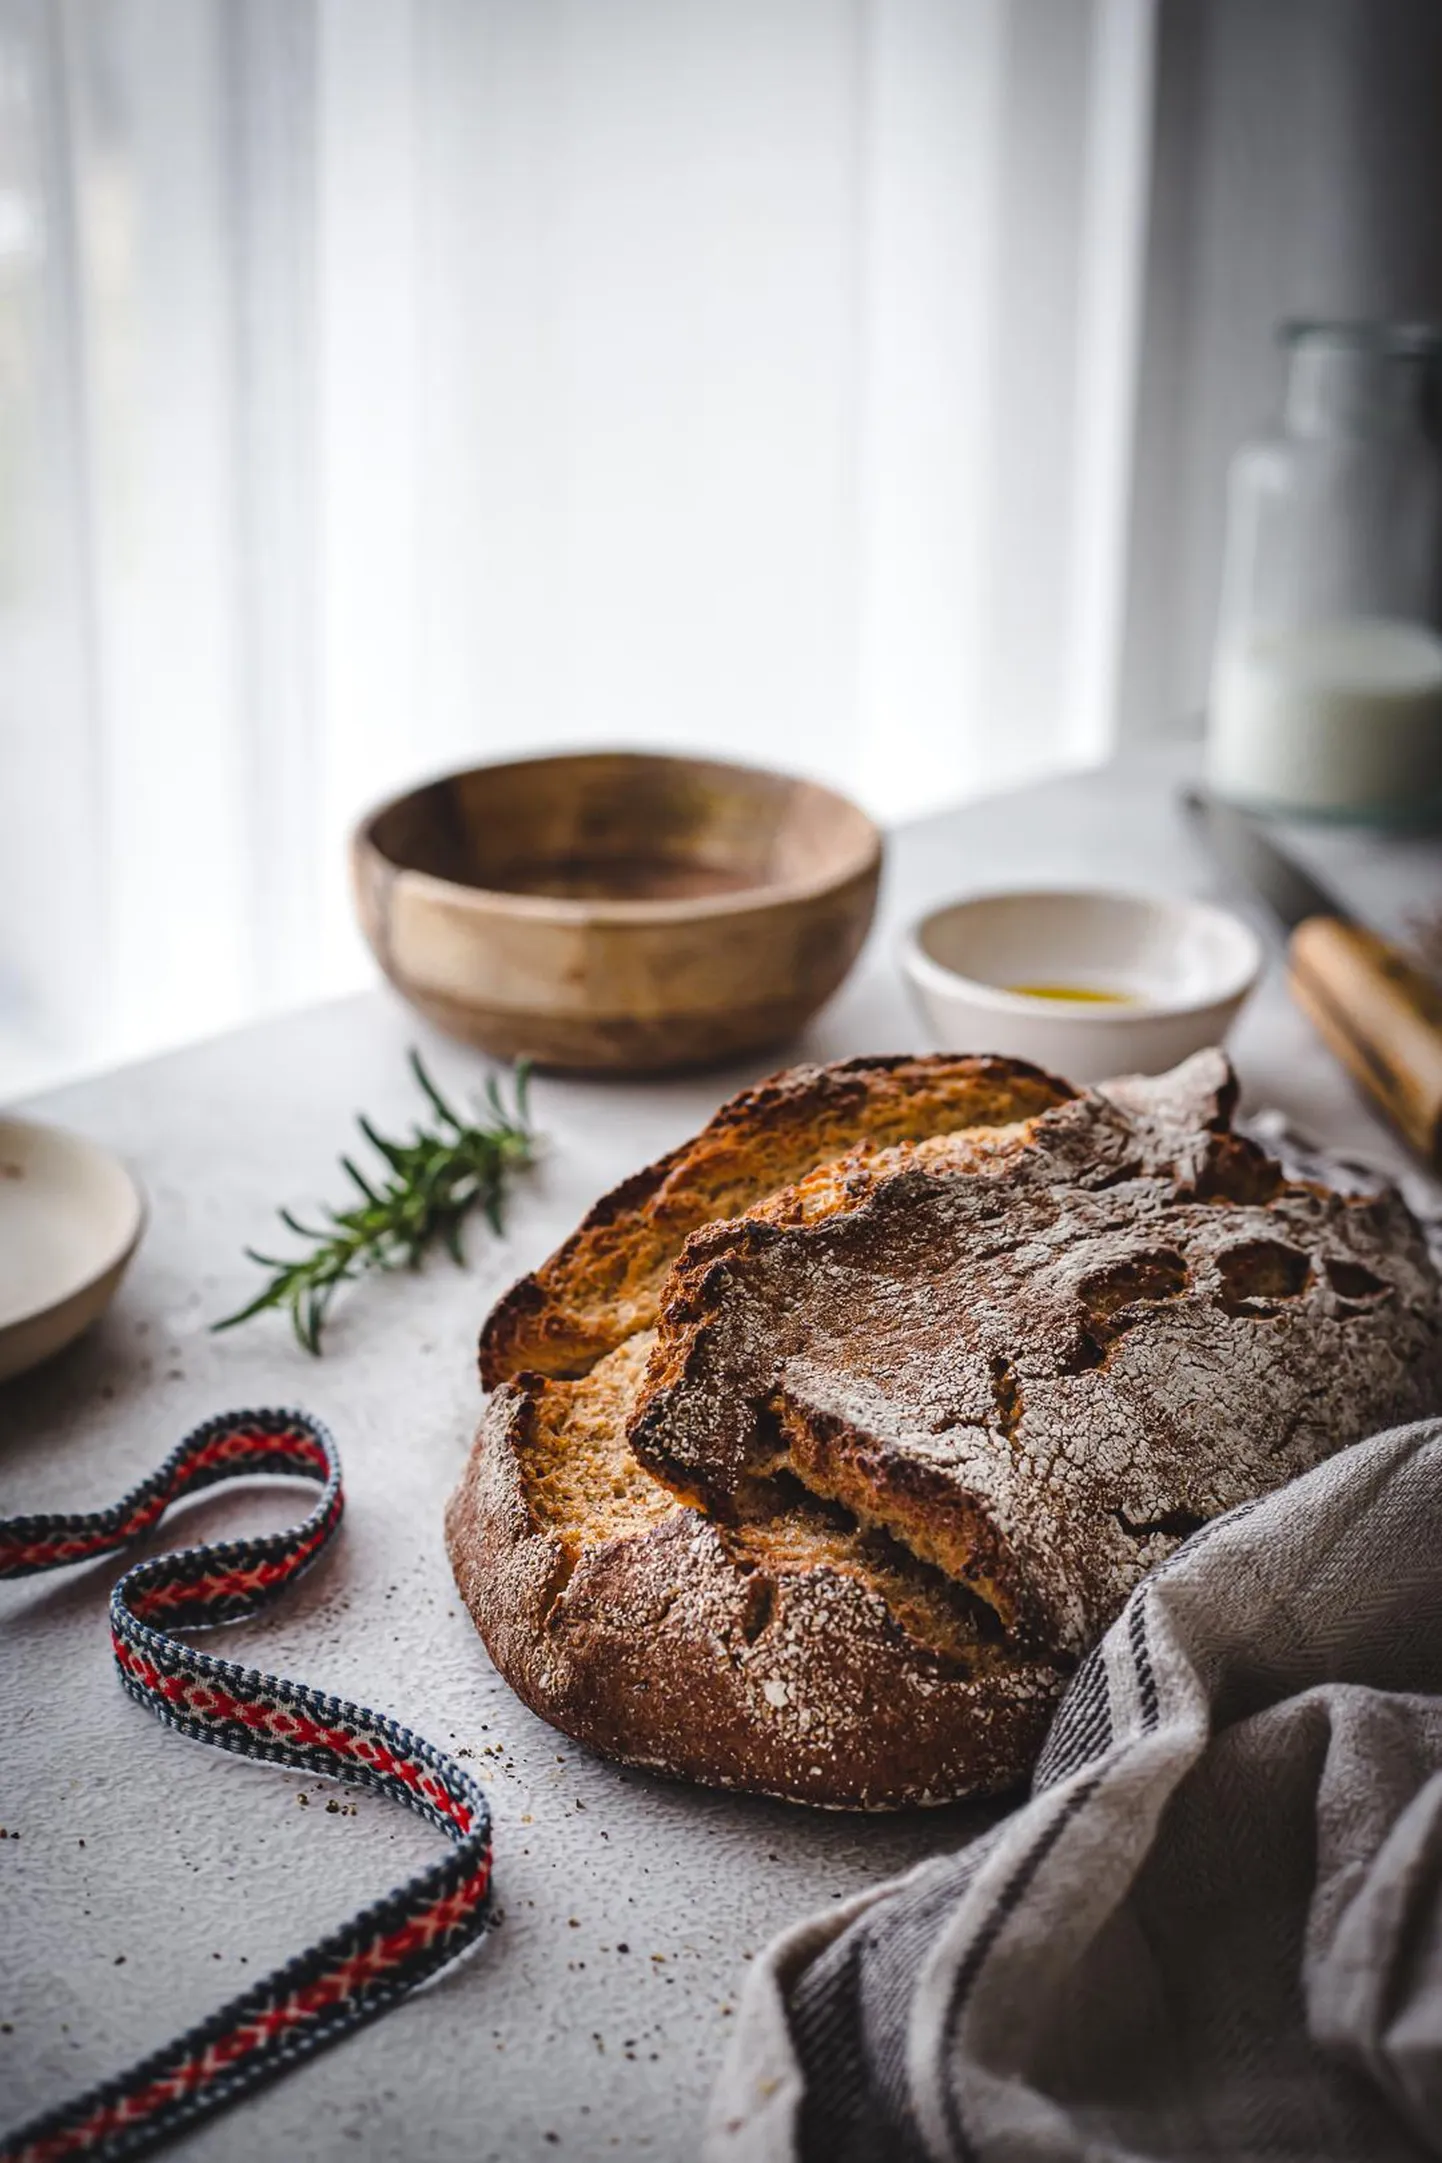 Lisaks eestlaste traditsioonilisele rukkileivale saab leivafestivalil maitsta ka teiste maade leivalisi, muid küpsetisi ja kõikvõimalikke leivakatteid. FOTO: Ragne Värk